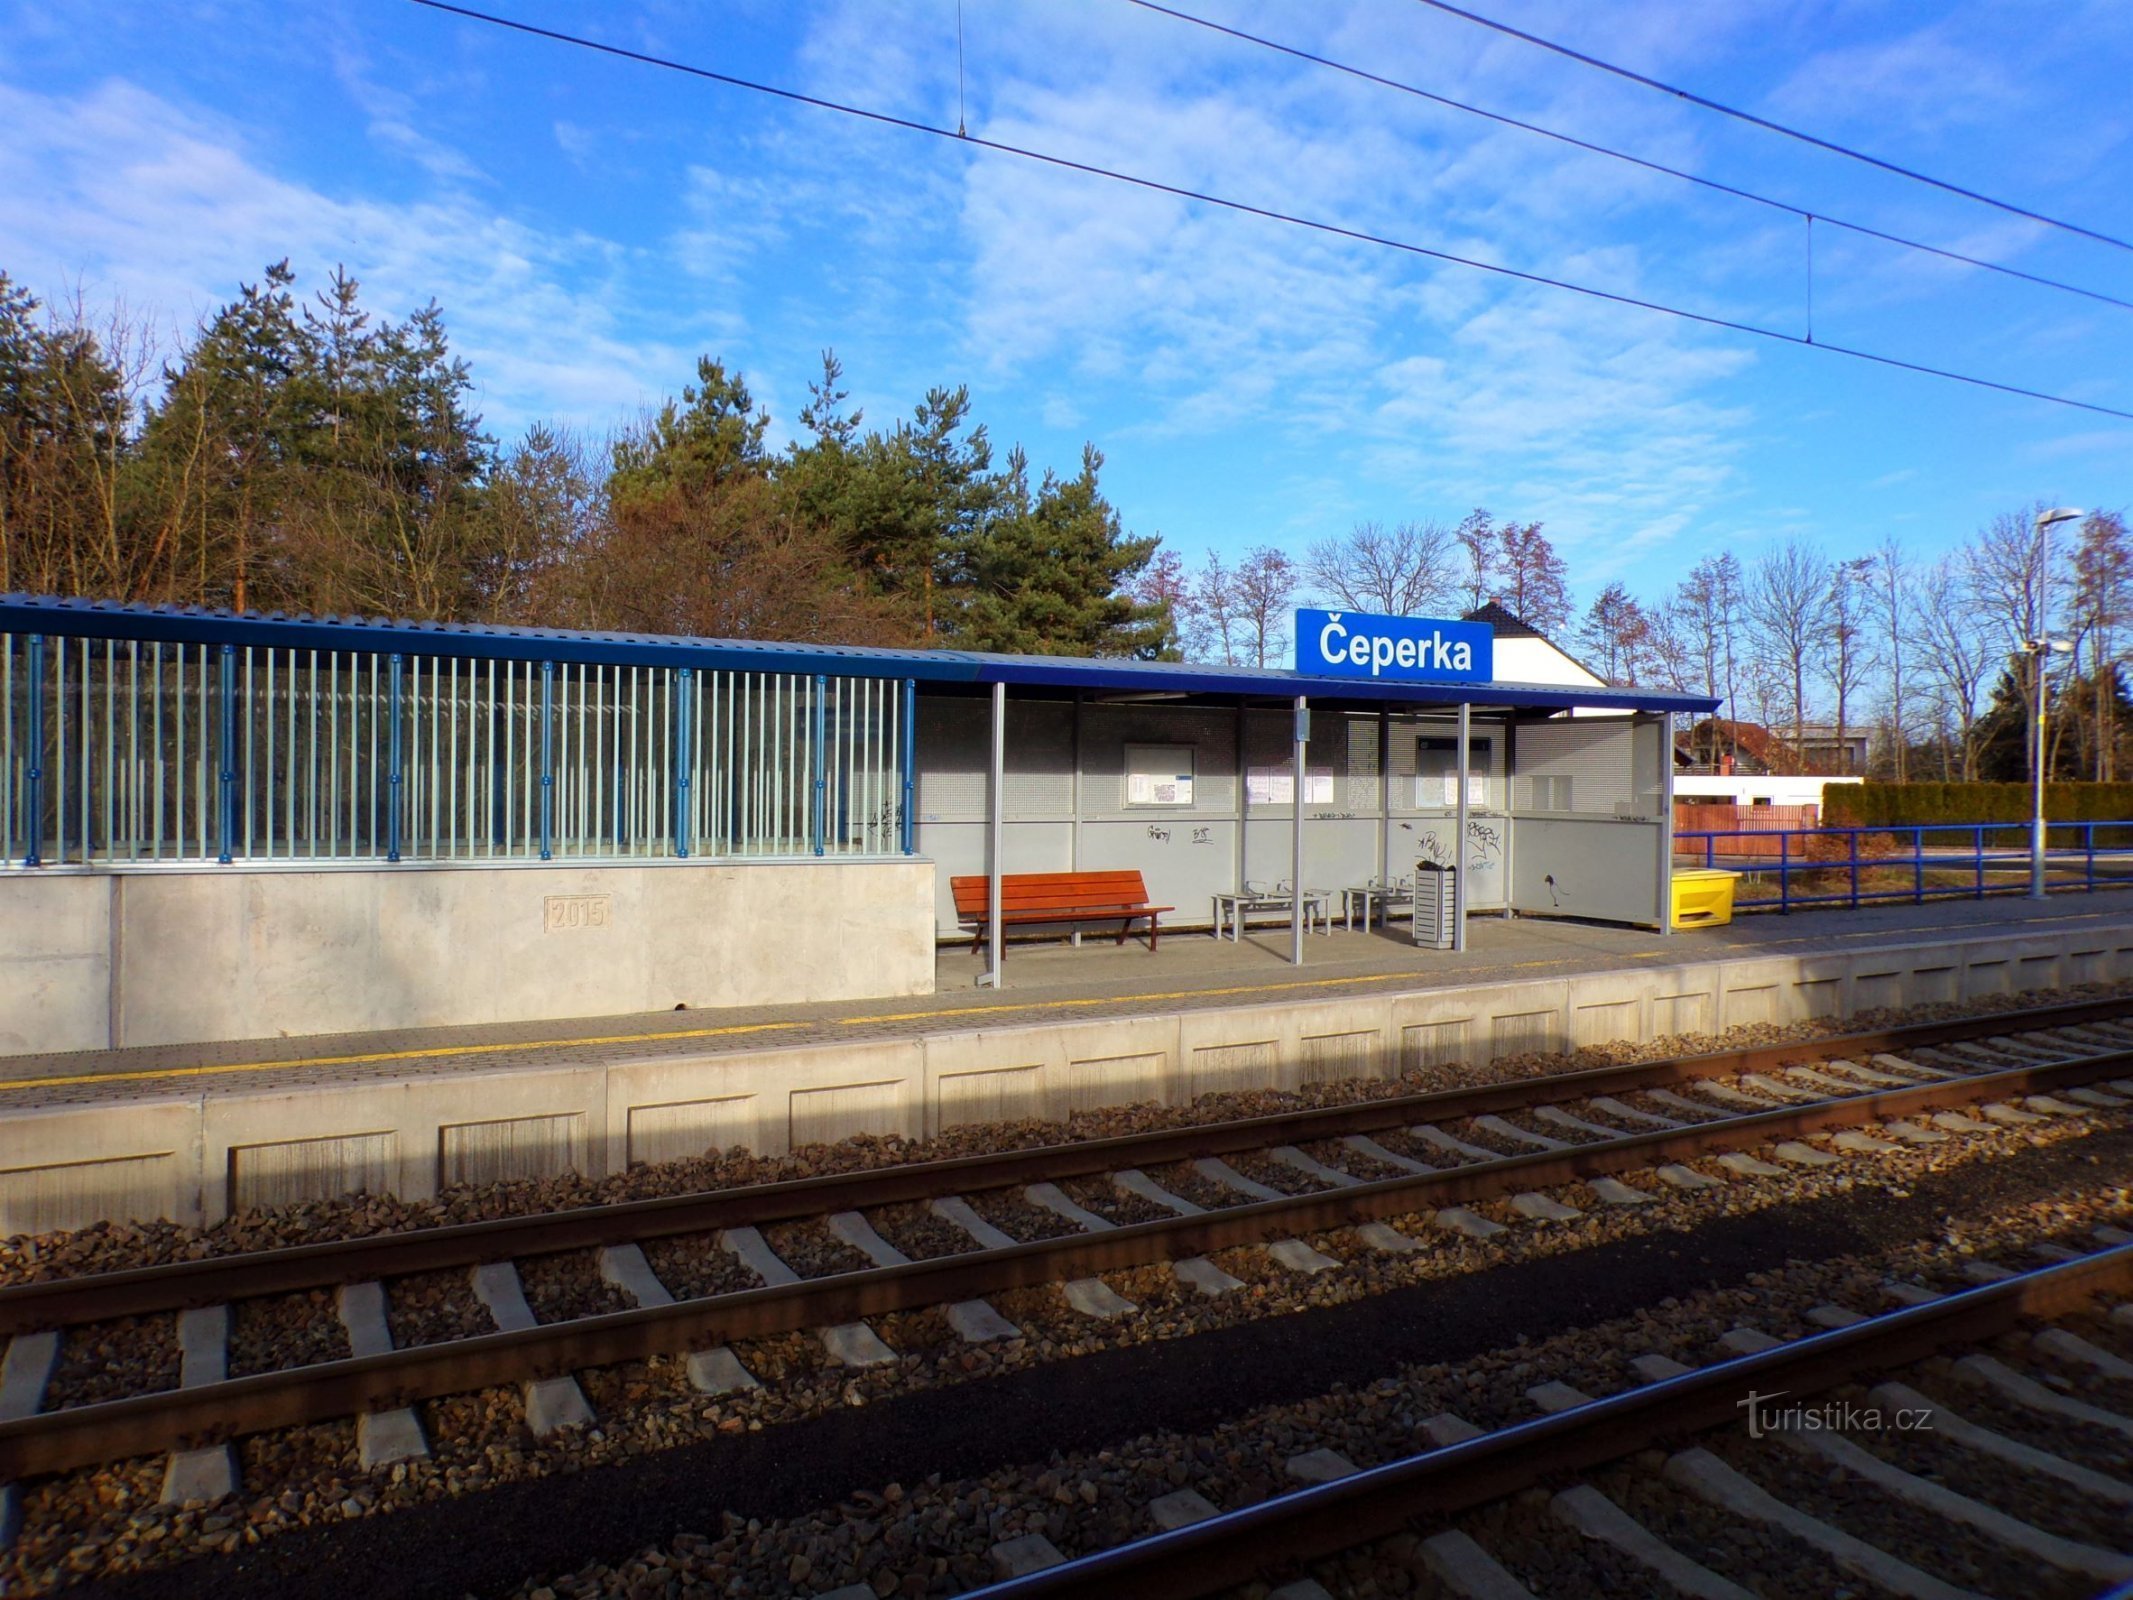 Σιδηροδρομικός Σταθμός (Čeperka, 18.2.2022/XNUMX/XNUMX)